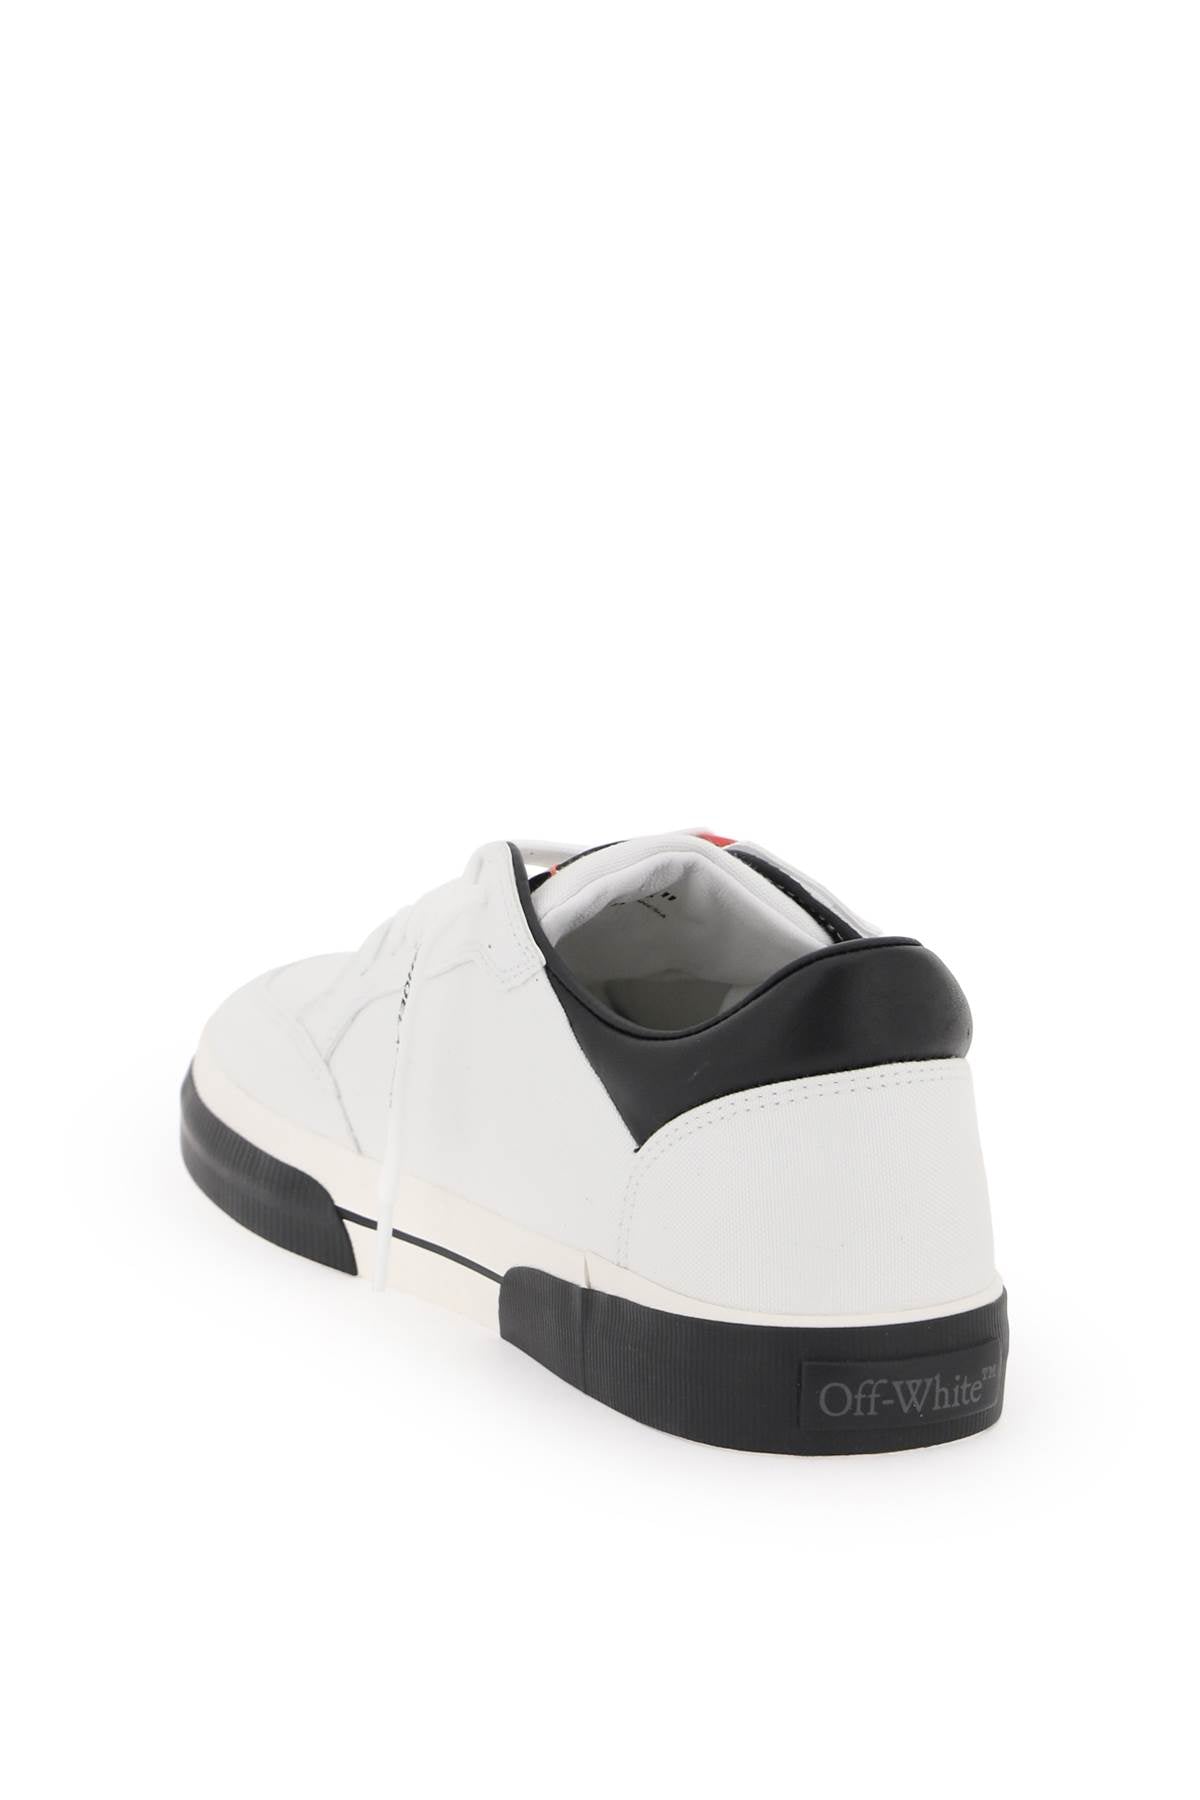 Off-white new vulcanized sneaker-2